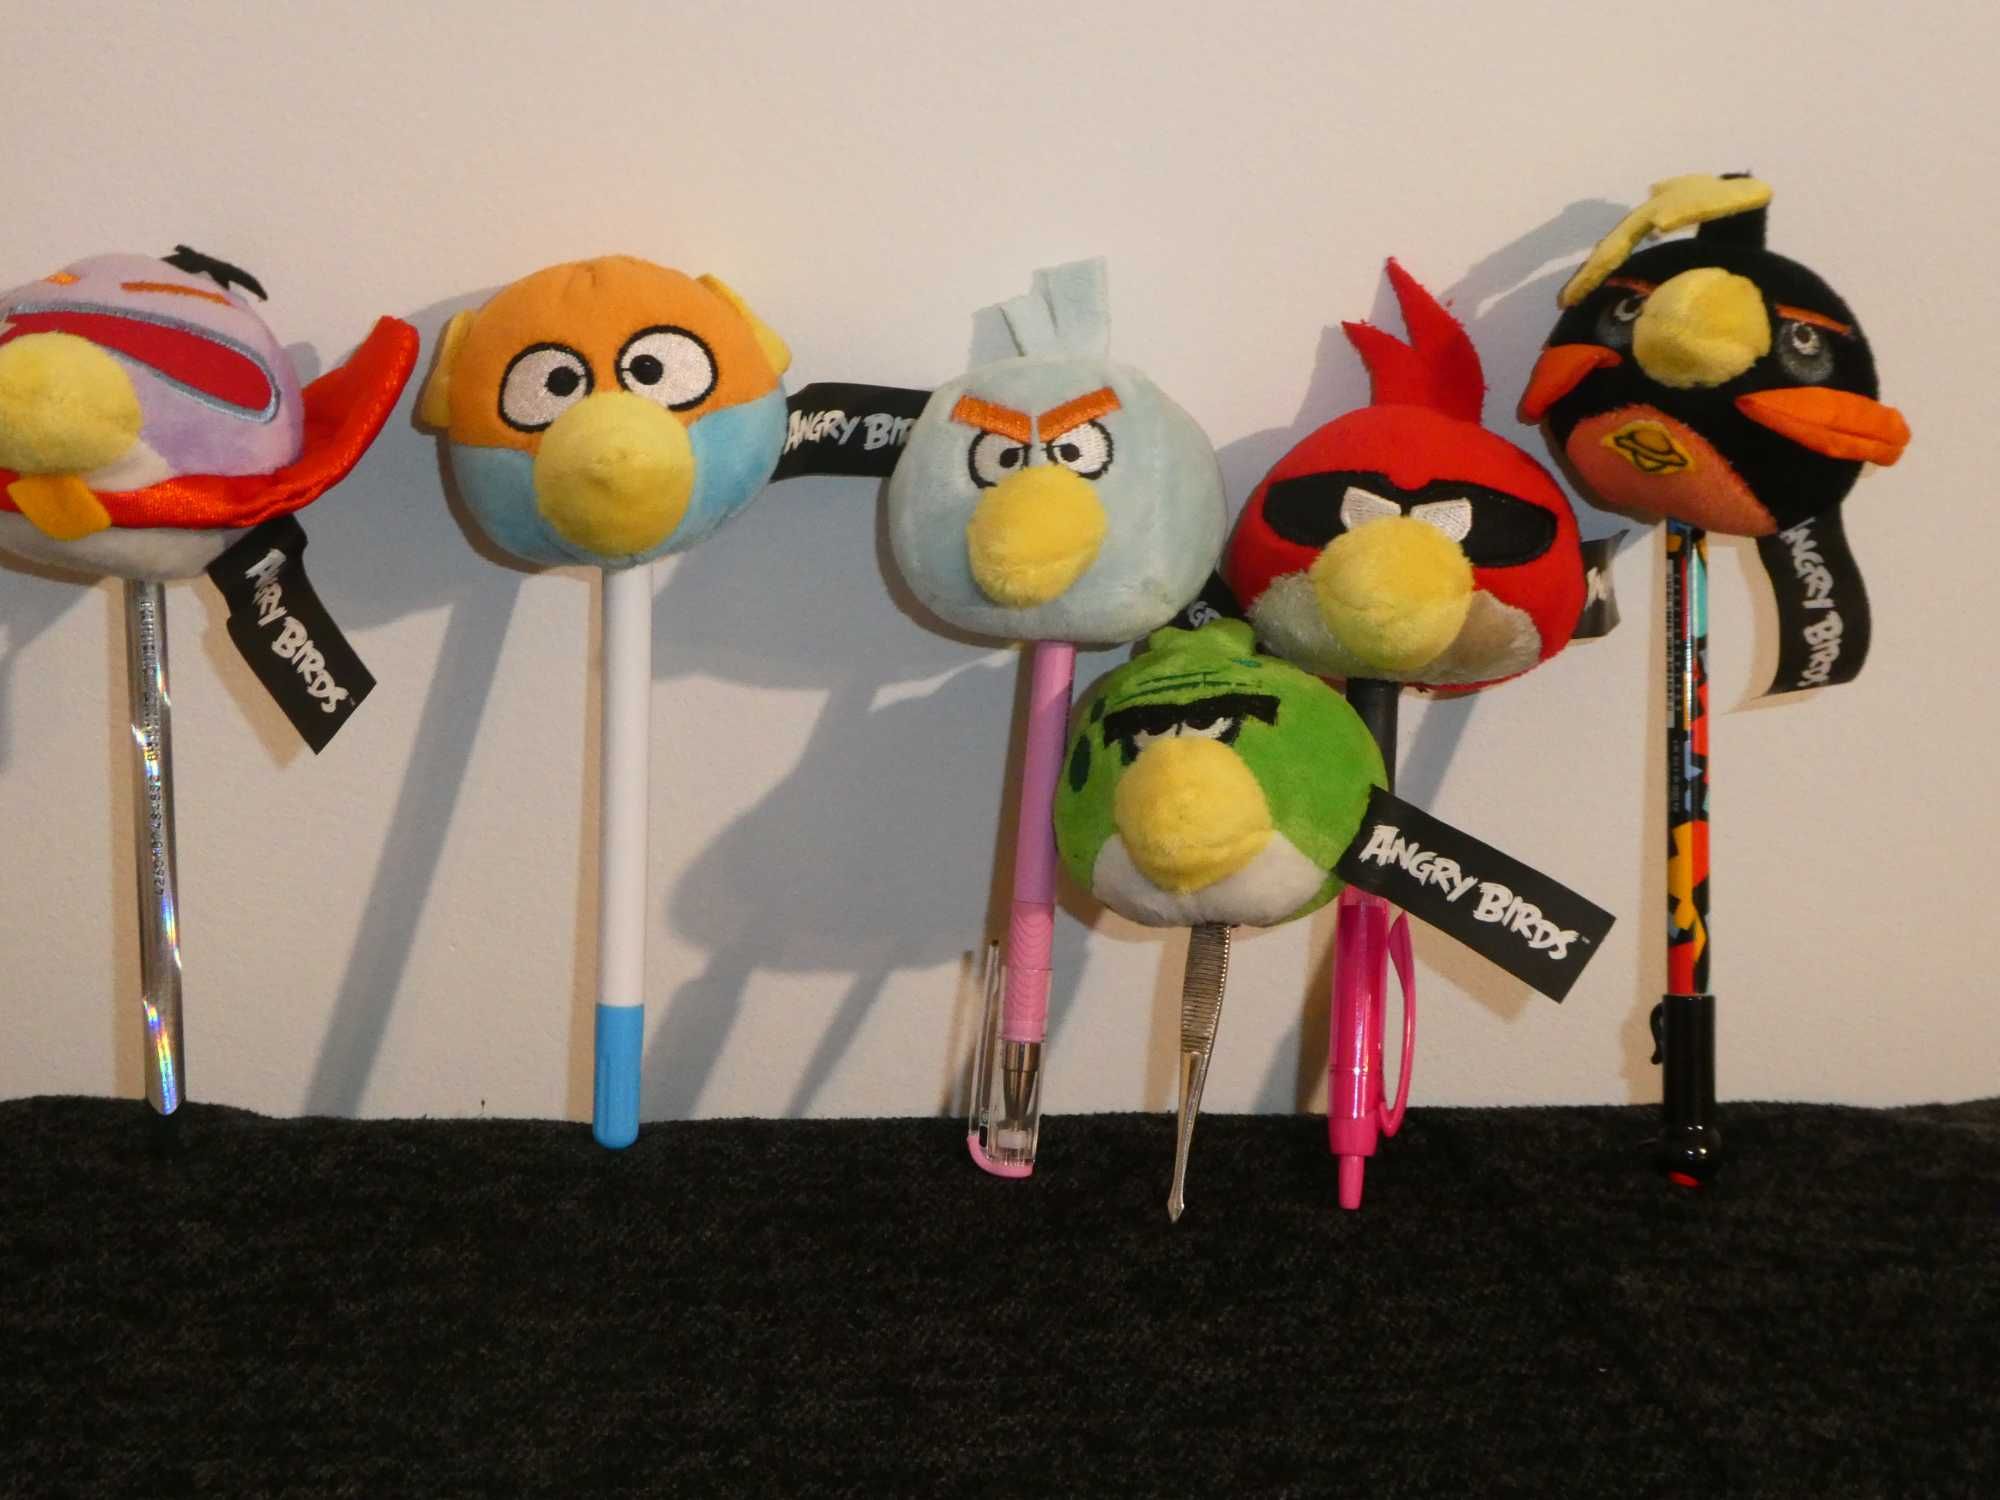 Angry Birds pacynki pluszaki do zabawy dla dzieci - komplet 6 sztuk